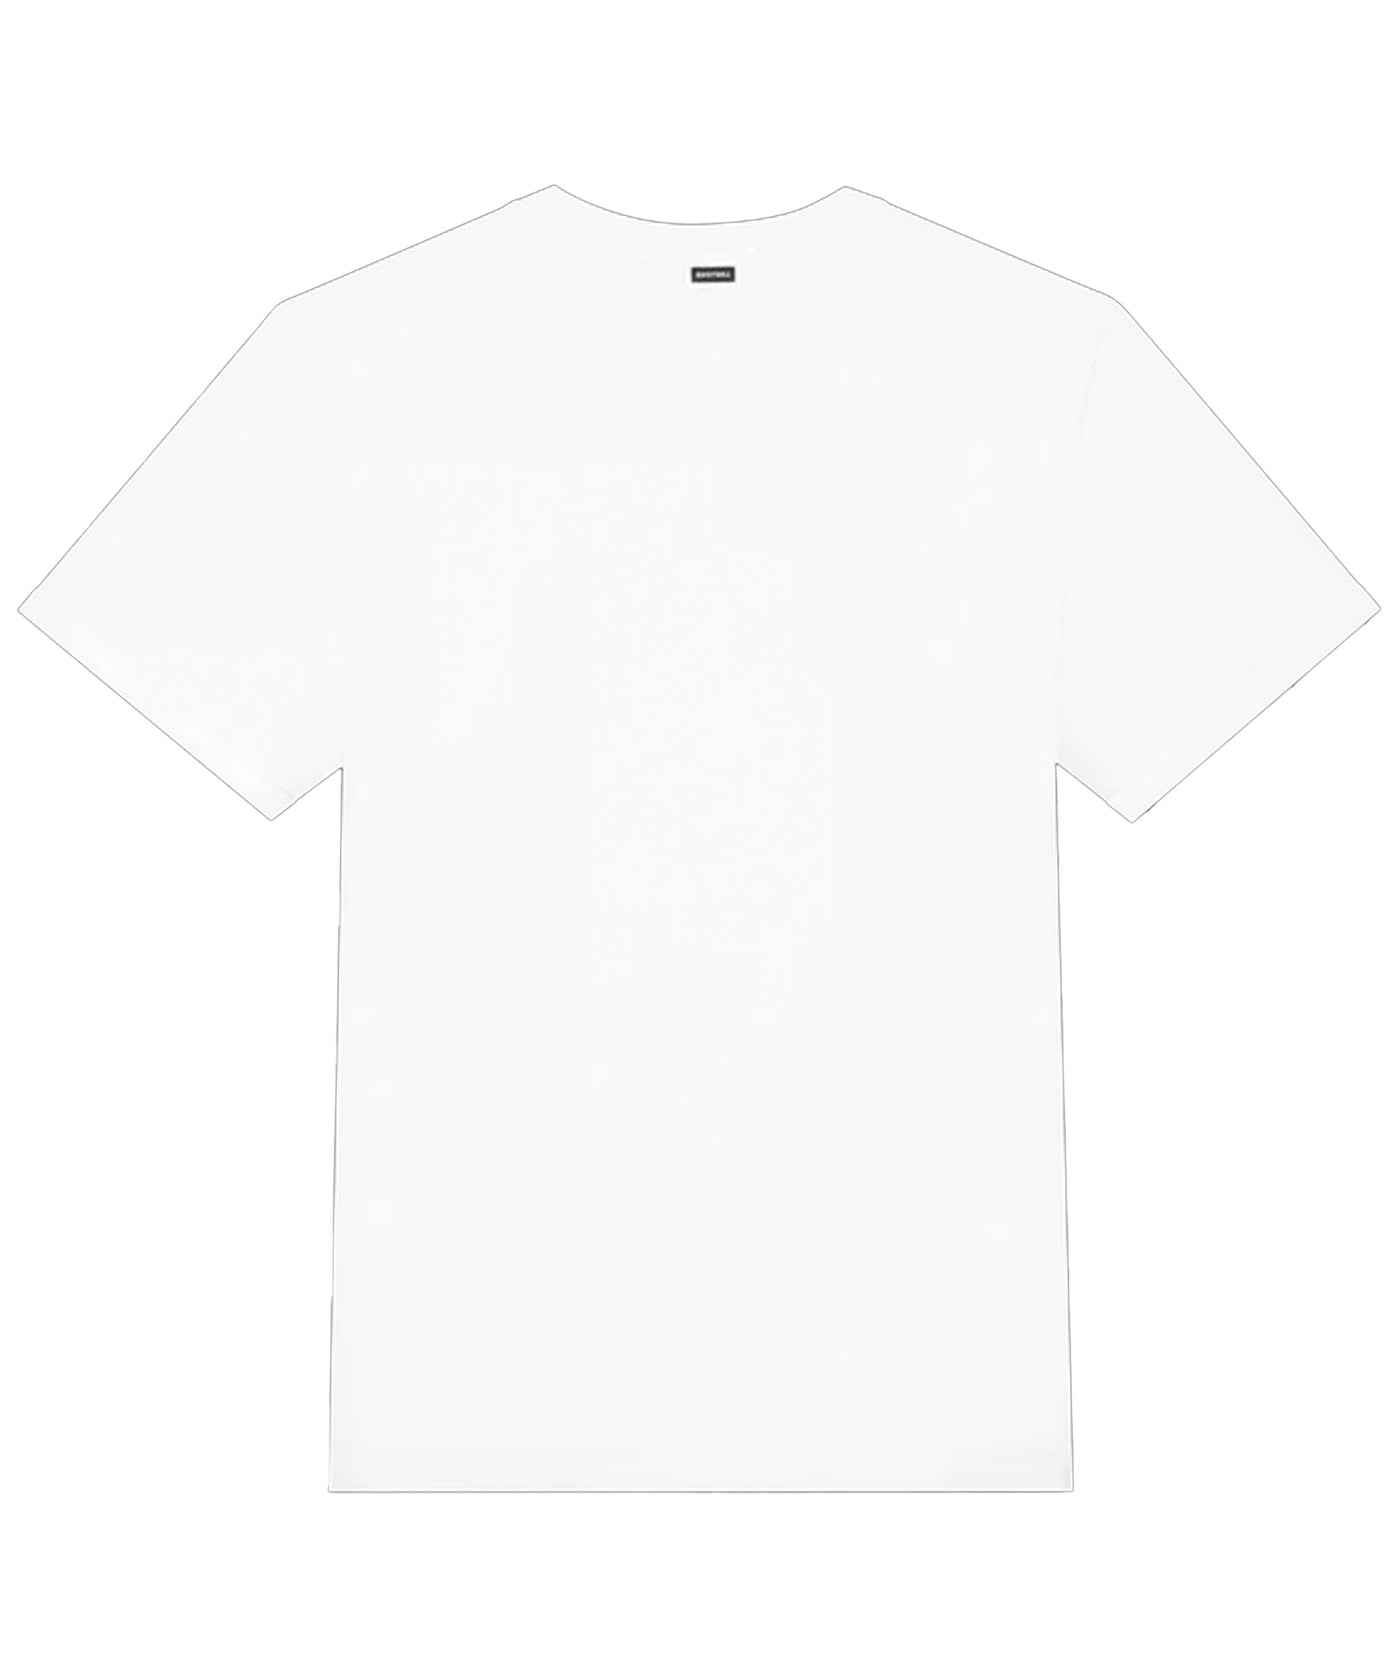 Quotrell - Sacramento - T-shirt - White/black